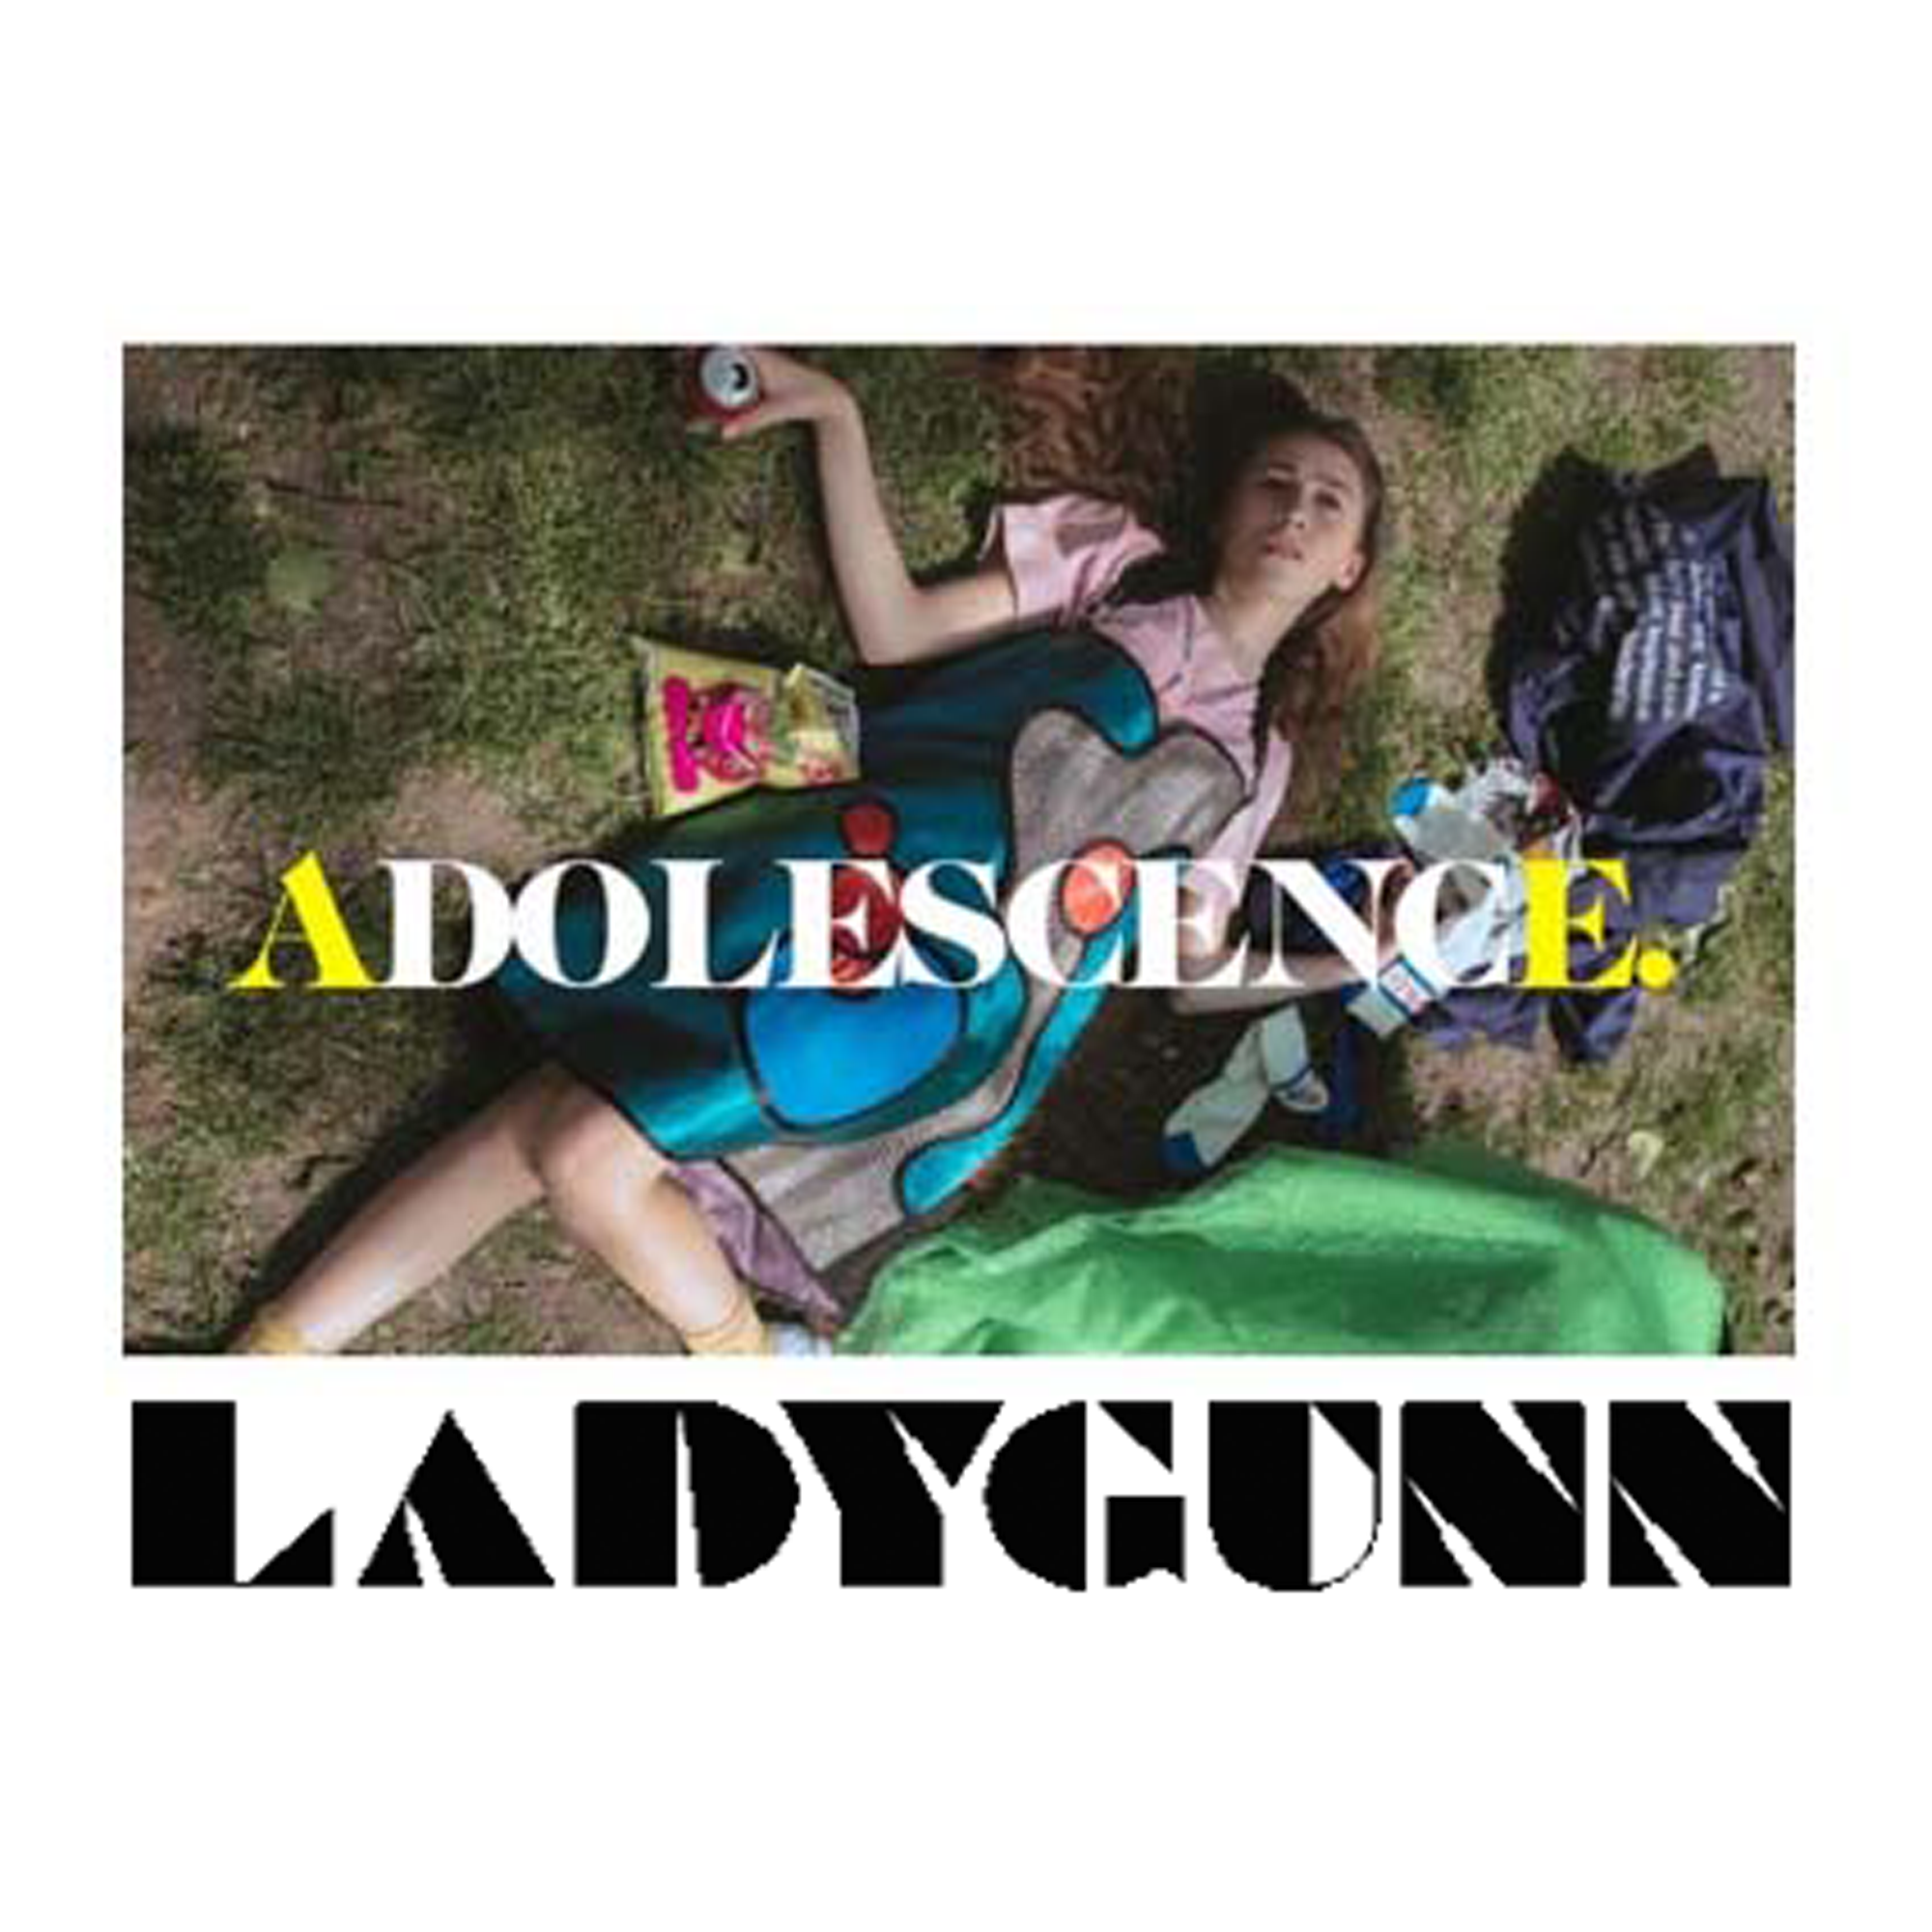 ladygunn adolescence magazine where Jill Turnbull was a lead hair stylist